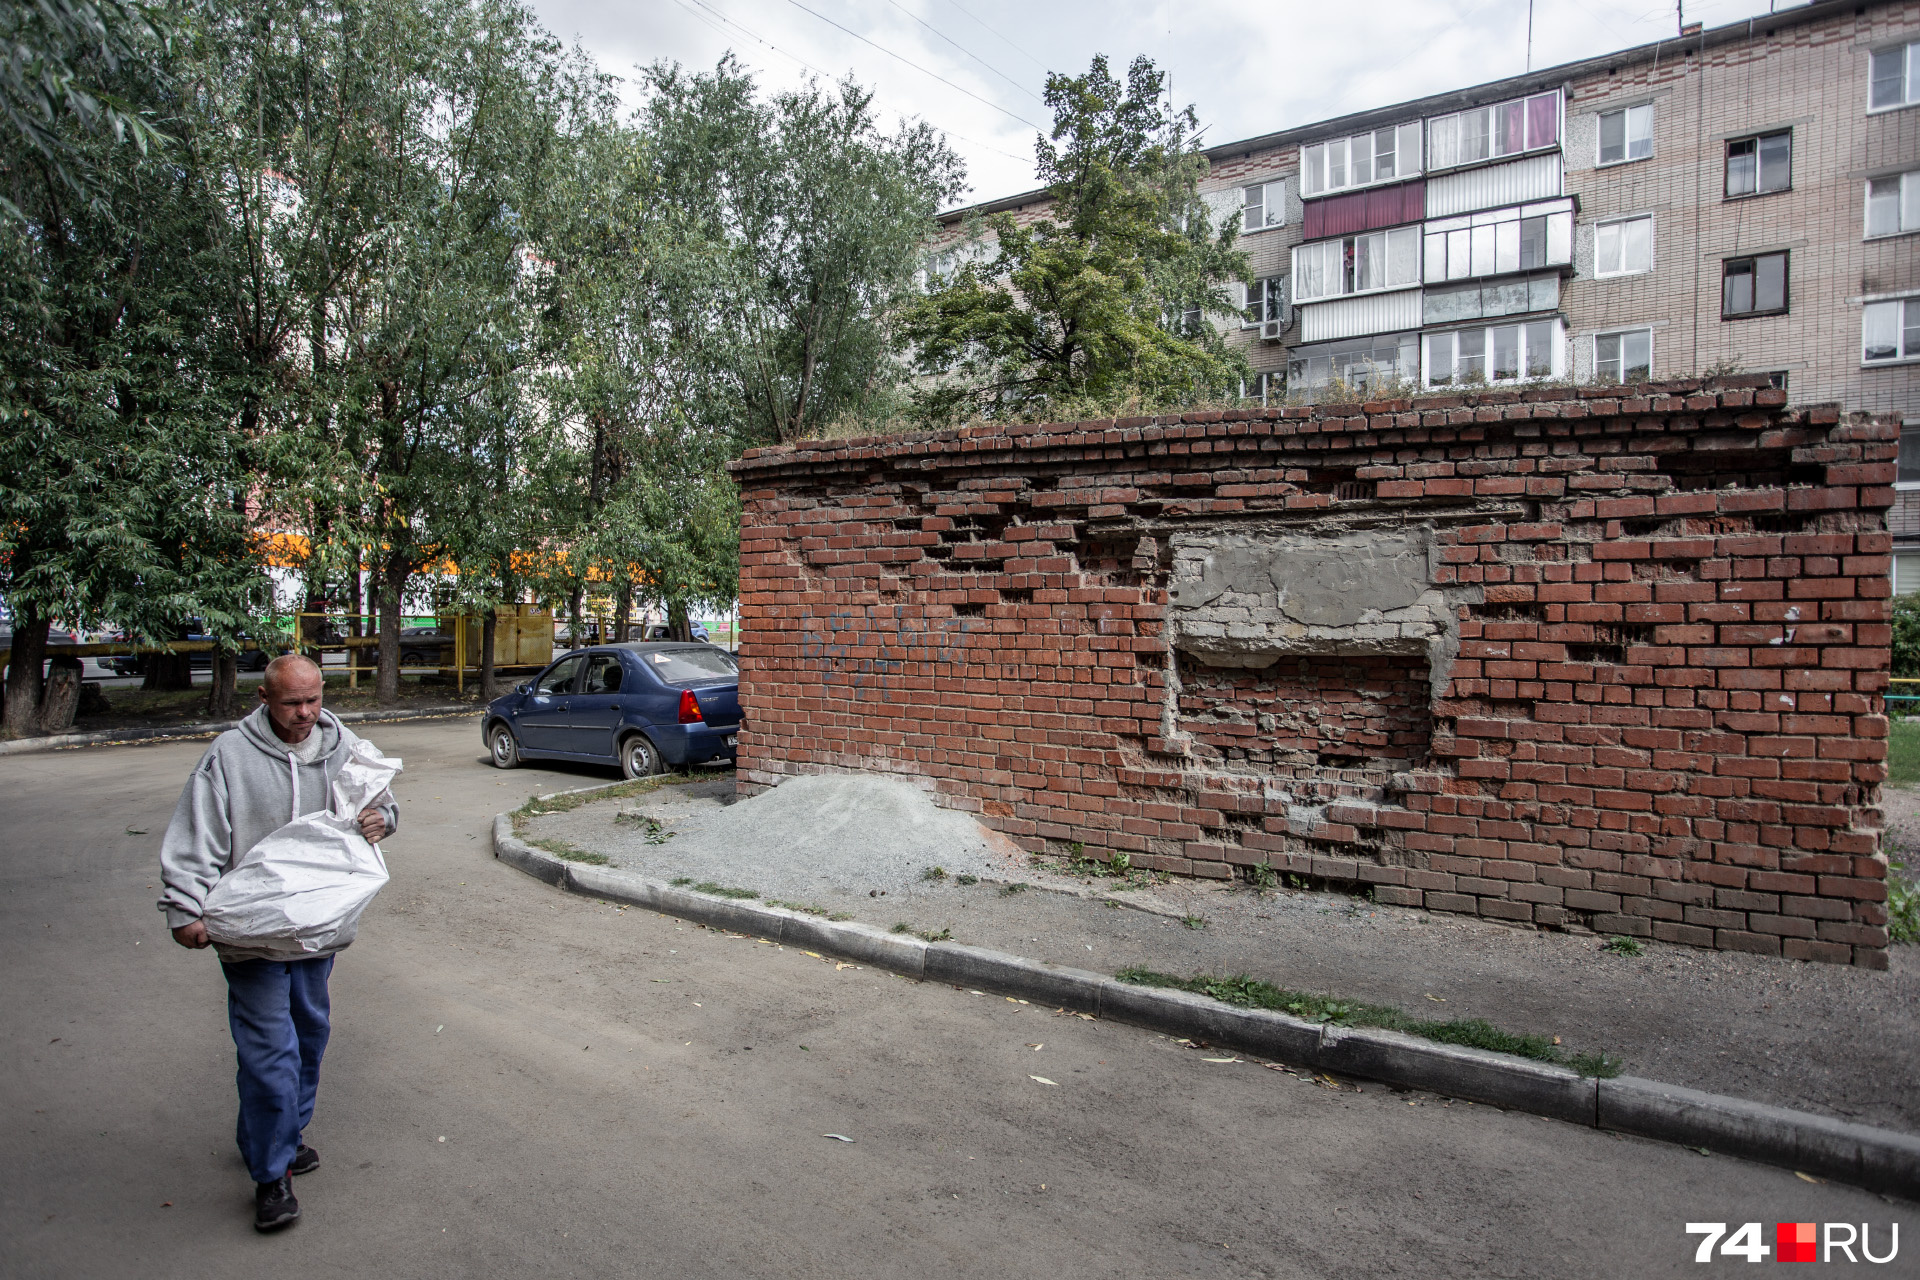 Большинство жителей чуриловских пятиэтажек знают друг друга по 40–45 лет